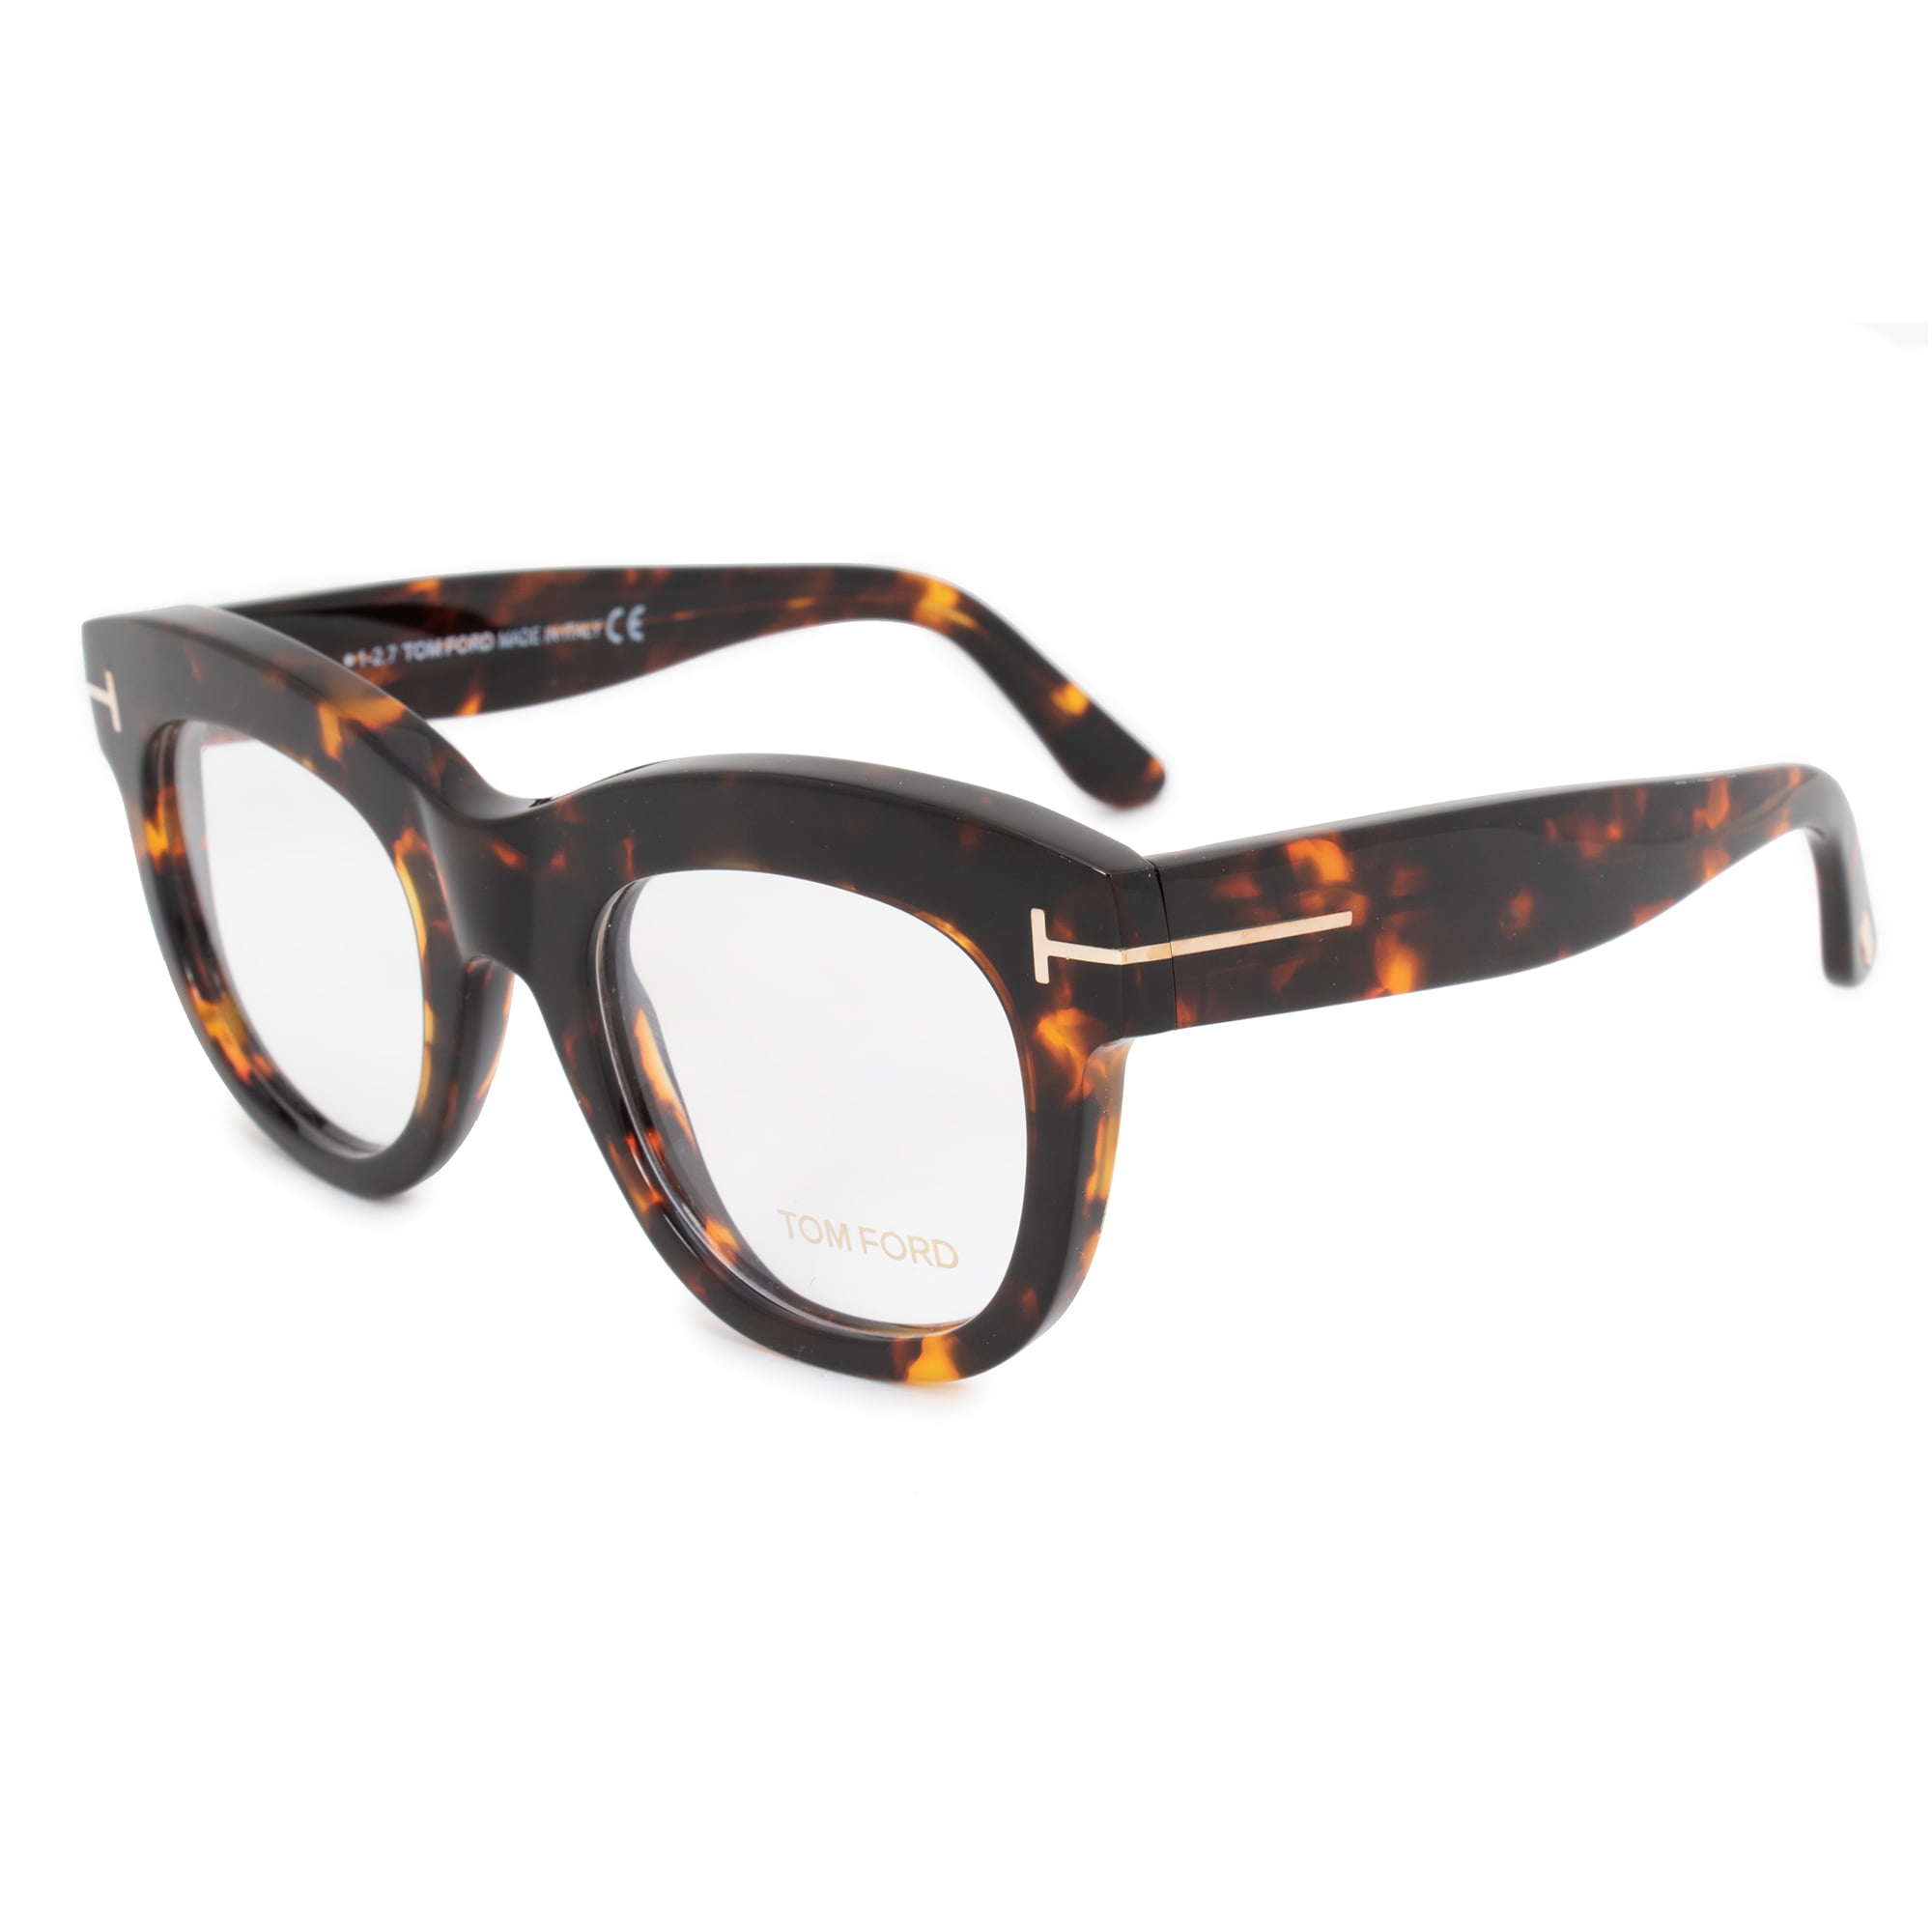 Tom Ford Square Eyeglass Frames FT5493 052 49 